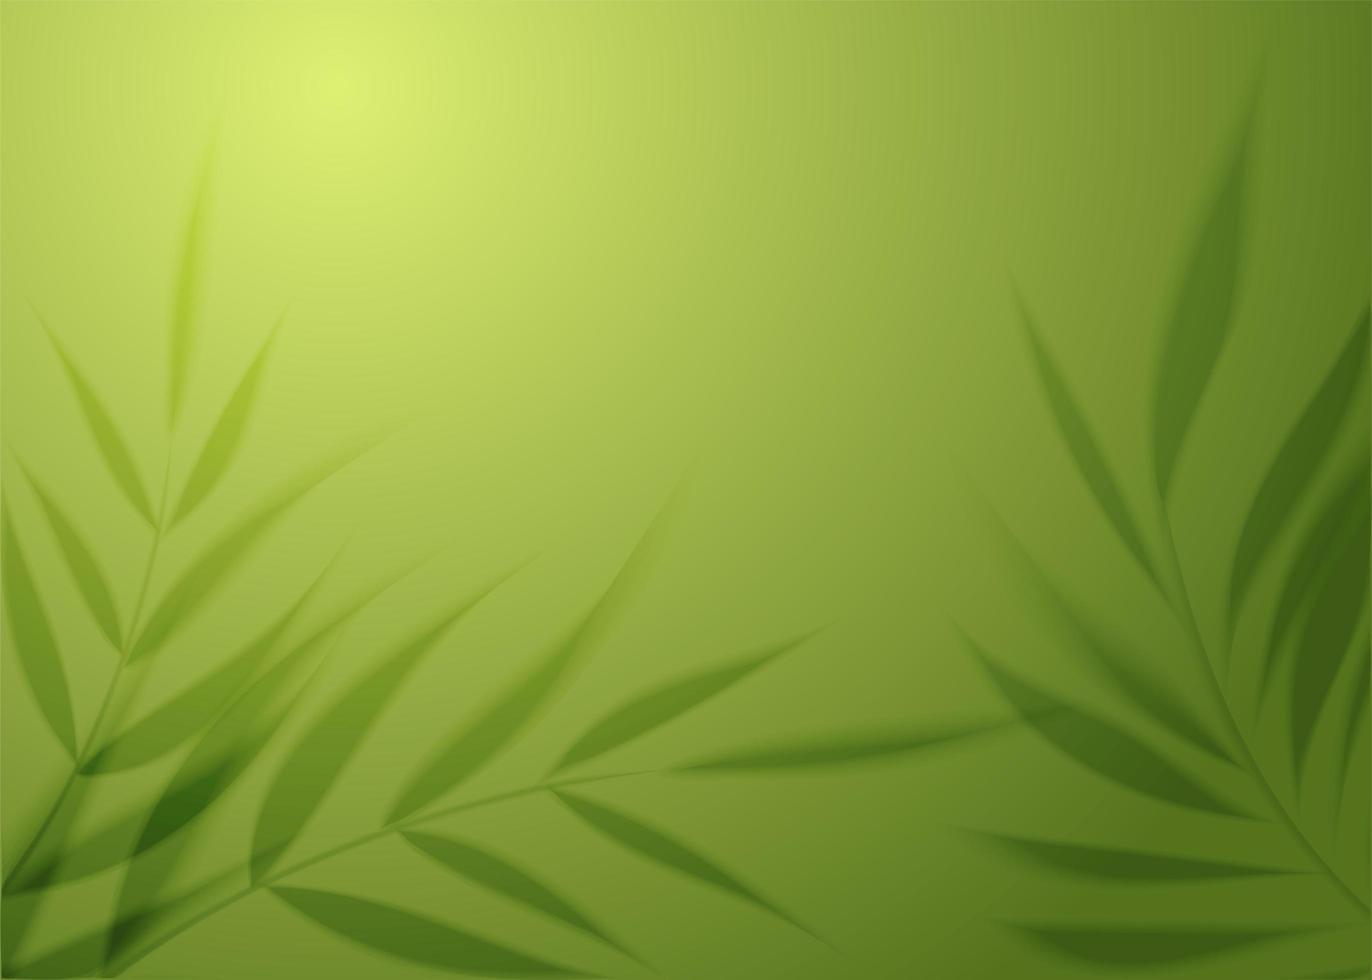 sombra transparente realista de uma folha de palmeira no fundo da parede verde. selva quente ou conceito de spa. planta tropical deixa sombra. maquete com desfoque de palmeira. ilustração vetorial foto